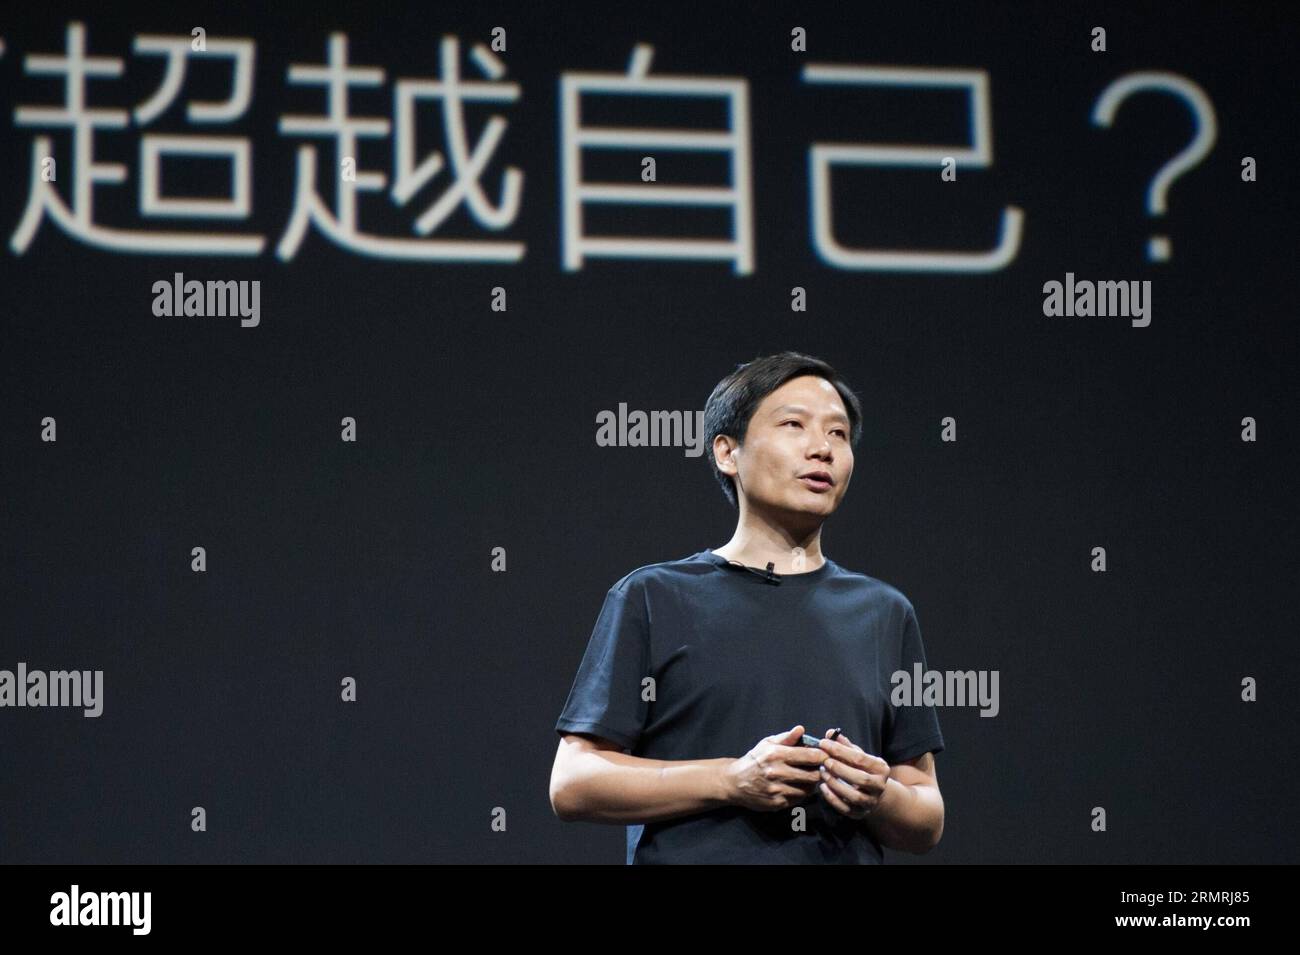 (140722) -- PECHINO, 22 luglio 2014 (Xinhua) -- lei Jun, CEO del produttore cinese di smartphone Xiaomi, introduce il processo di ricerca e sviluppo dei prodotti Xiaomi durante la conferenza annuale sulla distribuzione dei nuovi prodotti tenutasi a Pechino, capitale della Cina, il 22 luglio 2014. Xiaomi ha rilasciato il suo nuovo prodotto per smartphone Mi4 in occasione del lancio annuale del nuovo prodotto martedì. (Xinhua/Zhang Jin) (yxb) CHINA-BEIJING-XIAOMI-NEW PRODUCT(CN) PUBLICATIONxNOTxINxCHN Pechino 22 luglio 2014 XINHUA lei jun CEO del produttore cinese di smartphone Xiaomi introduce il processo di ricerca e sviluppo di Xiaomi Products du Foto Stock